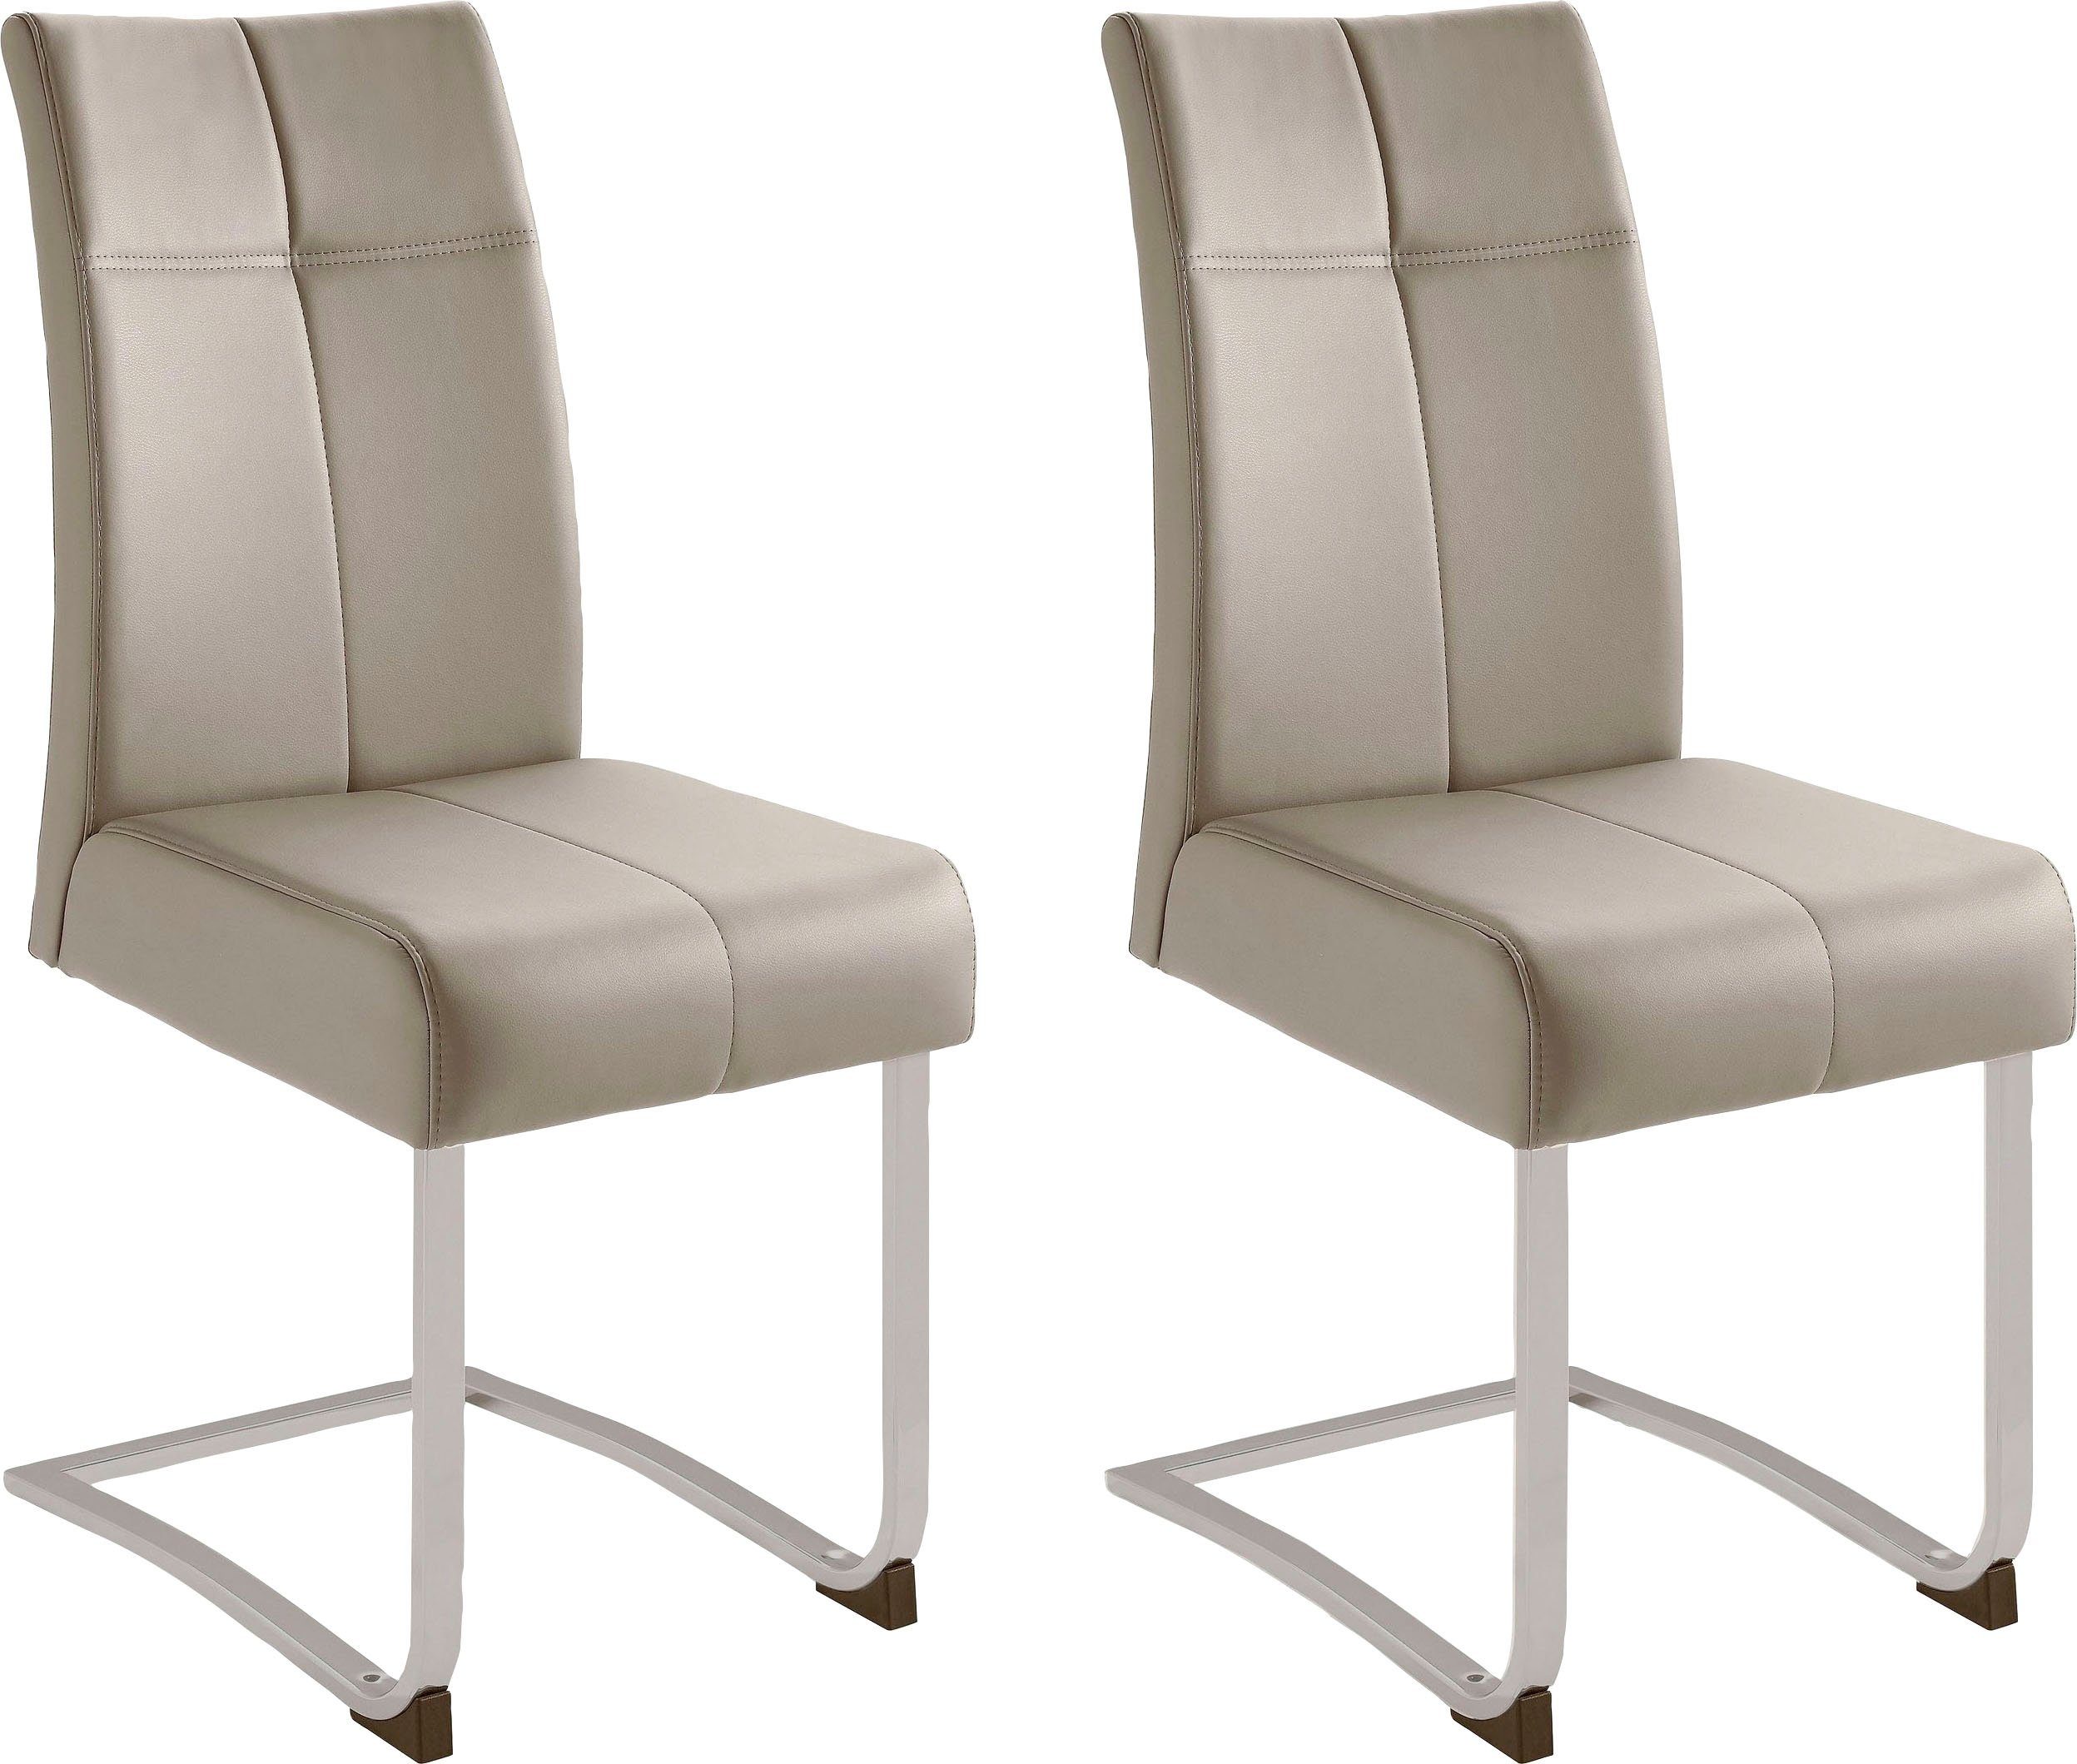 Home affaire Vrijdragende stoel RAB Bekleding in verschillende kwaliteiten, maximaal vermogen 120 kg, frame gepoedercoate chroom-look (set, 2 stuks)